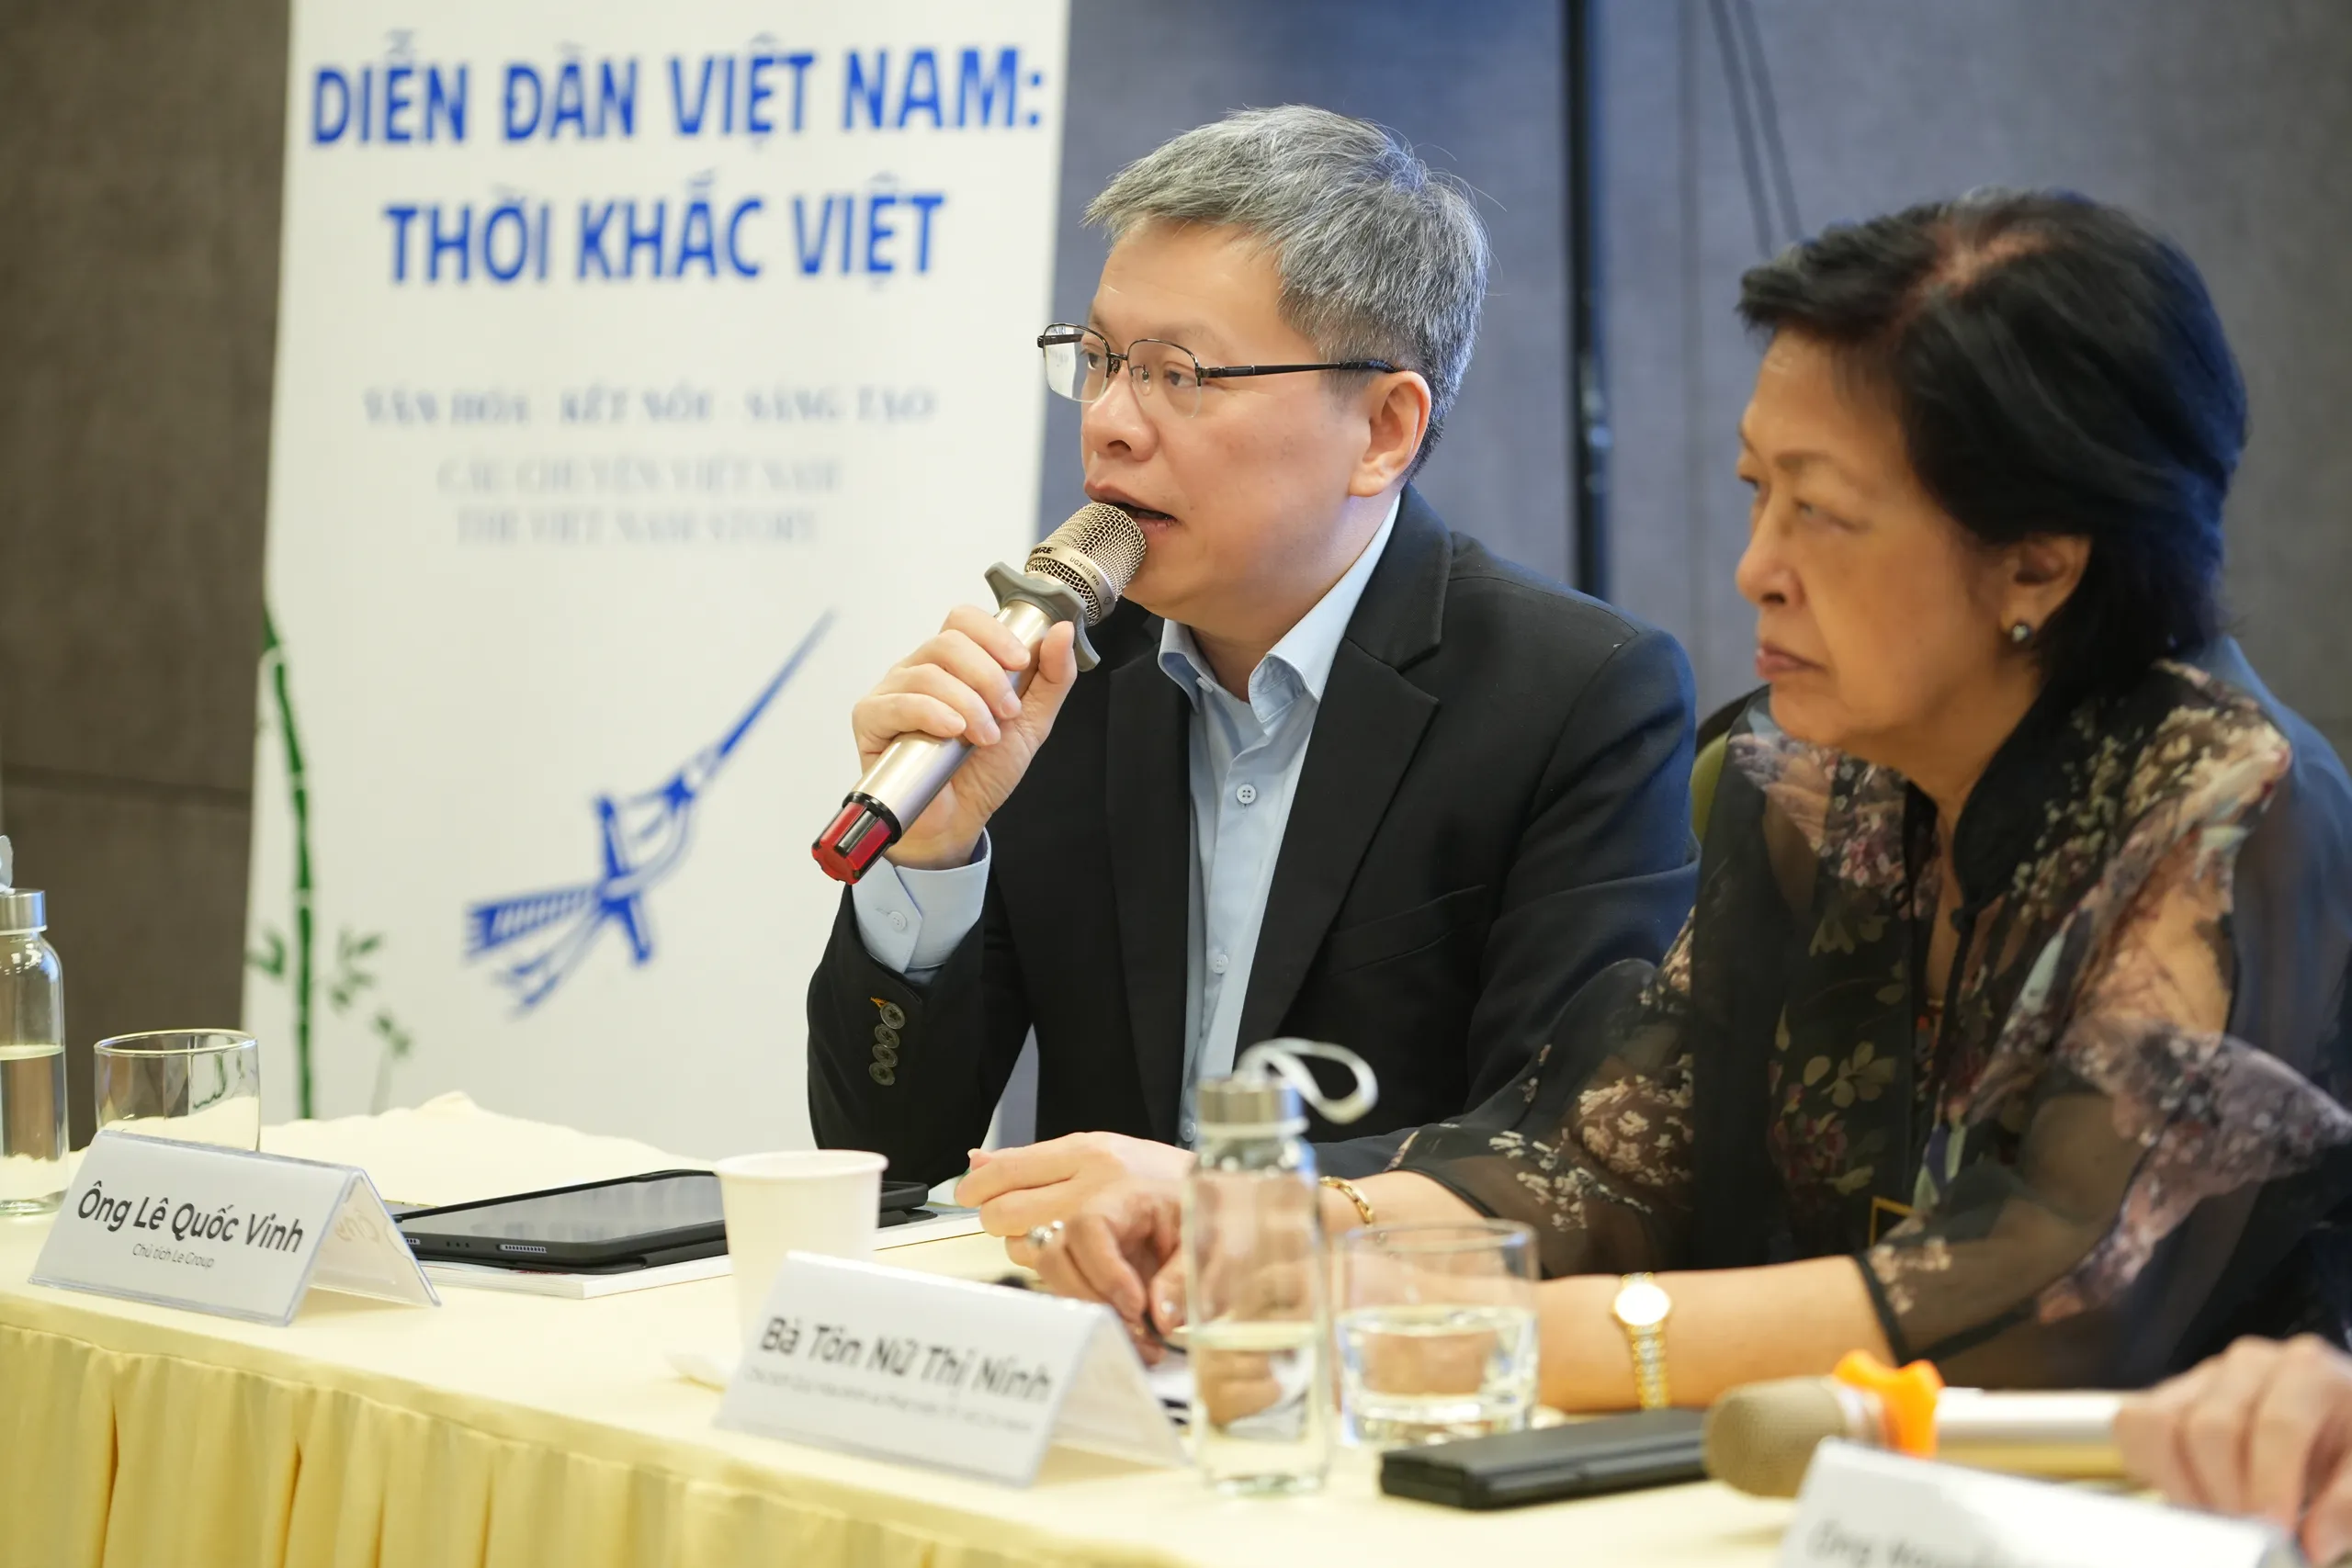 Sự kiện Diễn đàn Việt Nam: Thời khắc Việt sẽ diễn ra từ 25-26/05/2024